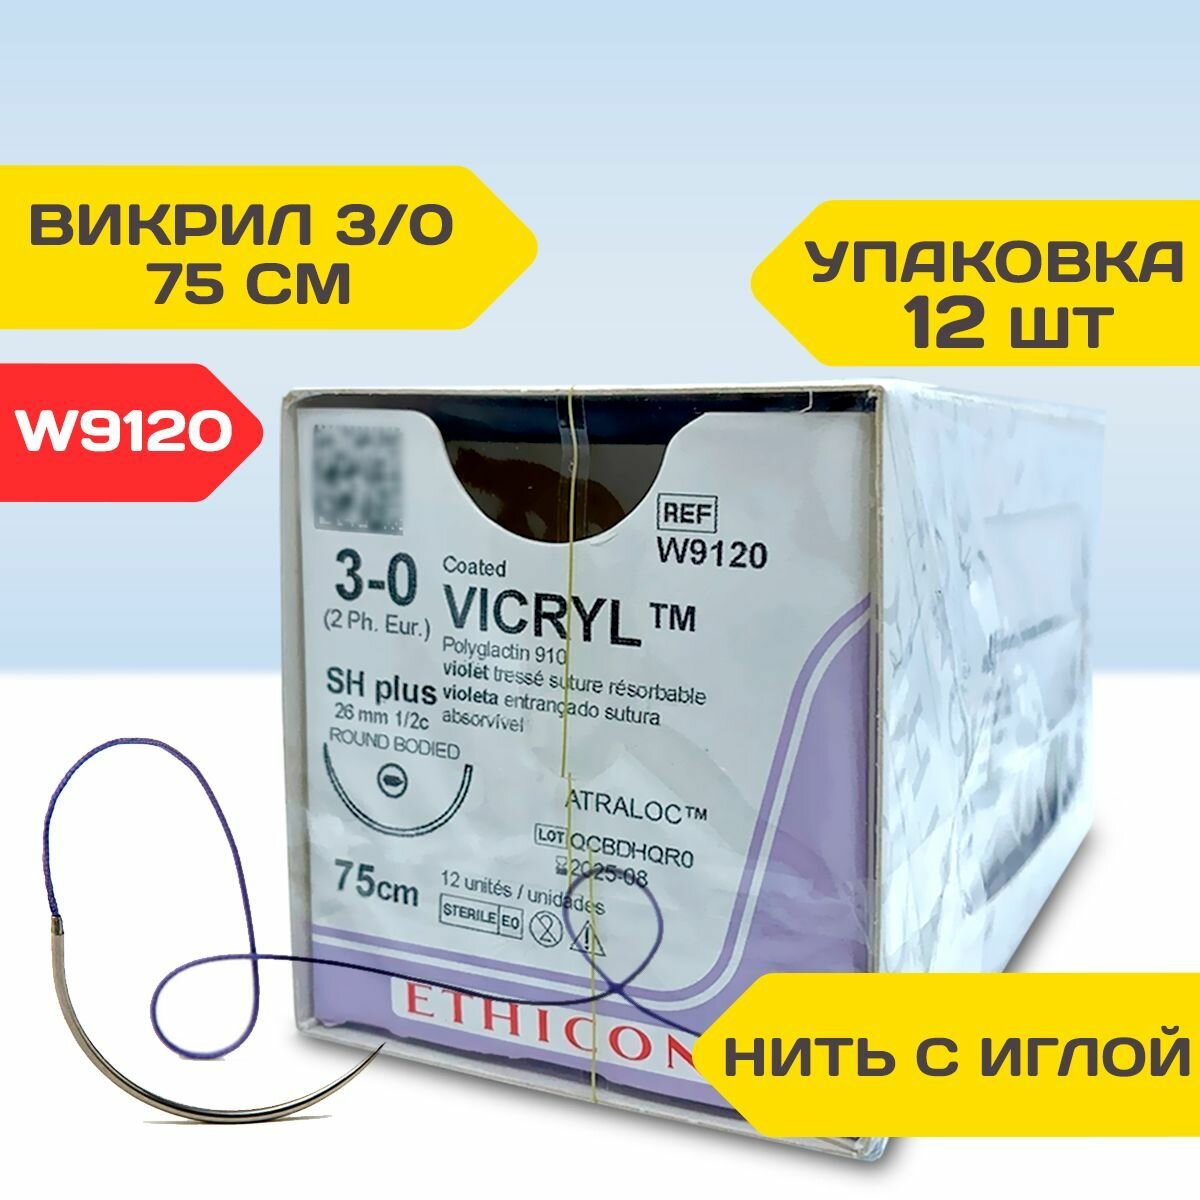 Шовный материал W9120 синтетический рассасывающийся для хирургии Викрил 3/0, нить 75 см. в комплекте с иглой (1 штука)